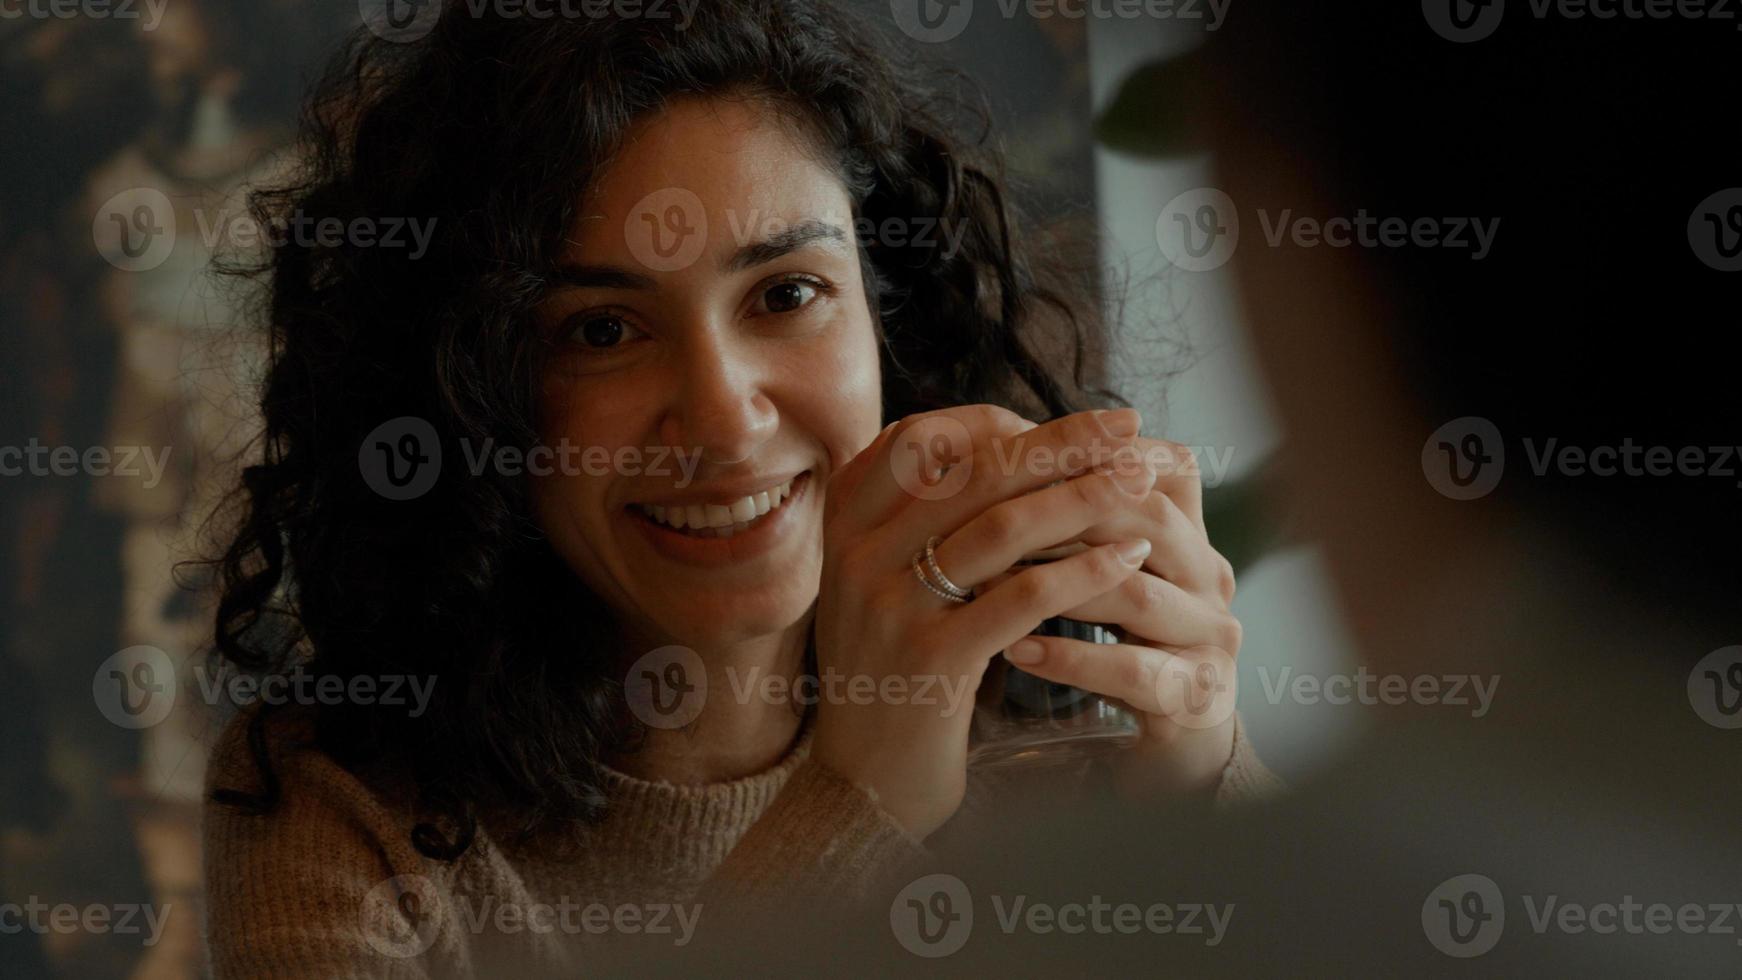 vrouw zit en drinkt koffie terwijl ze met de man aan tafel praat foto